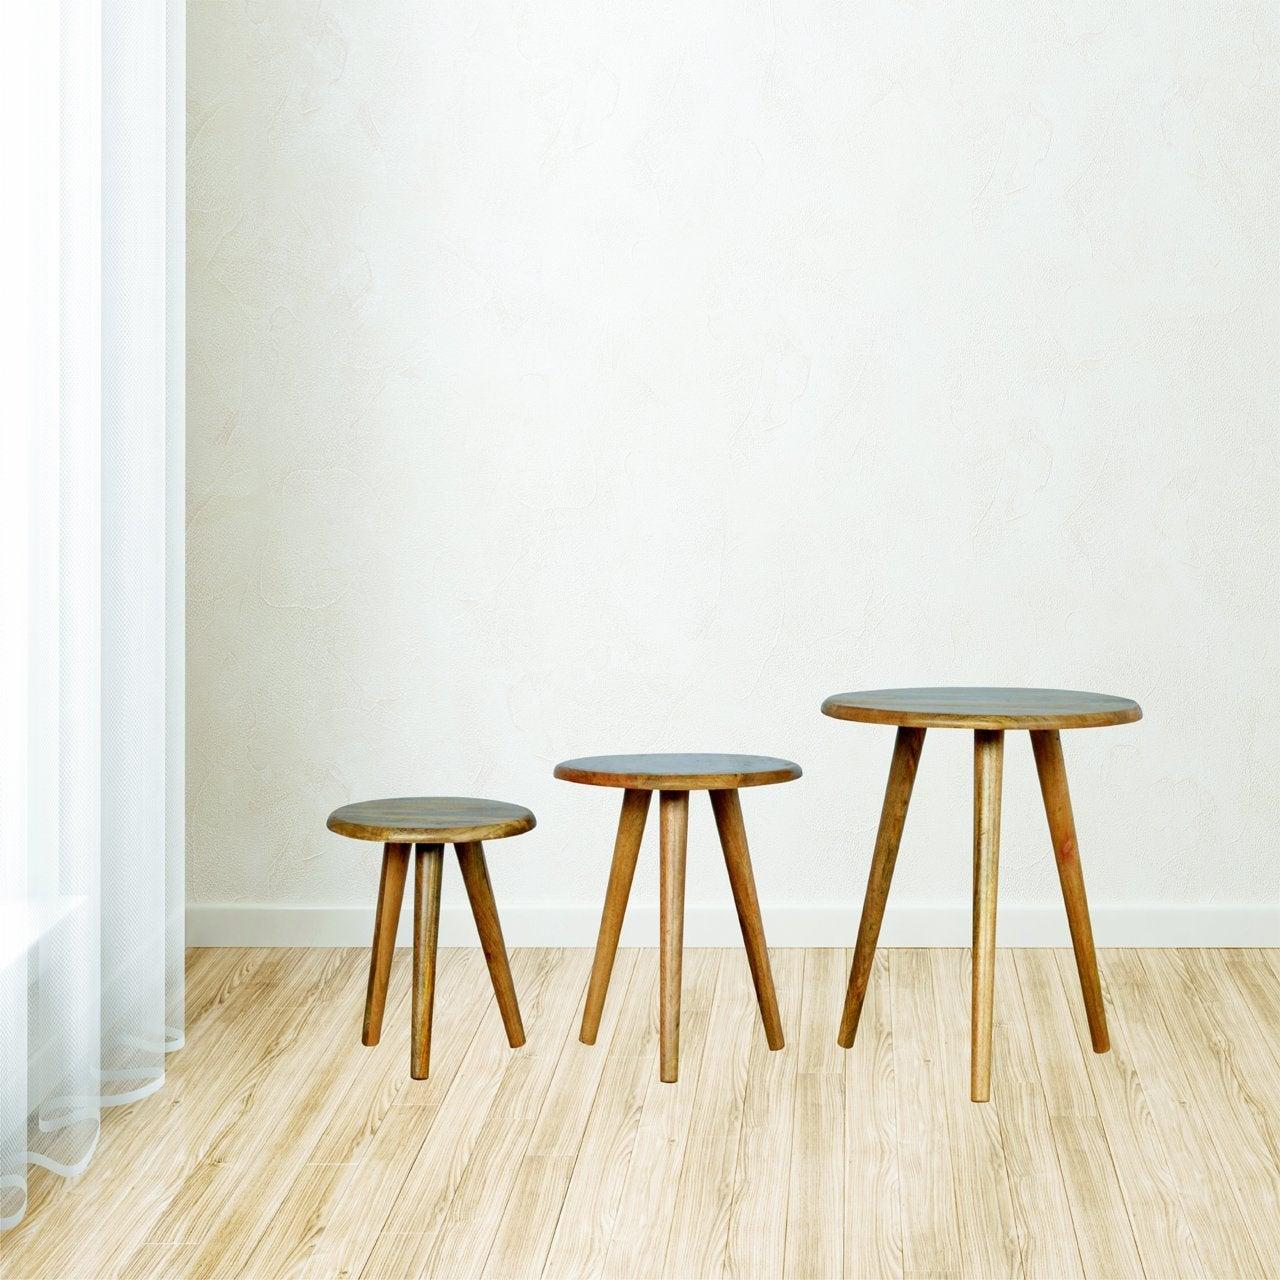 Nordic style stool set of 3 - crimblefest furniture - image 3